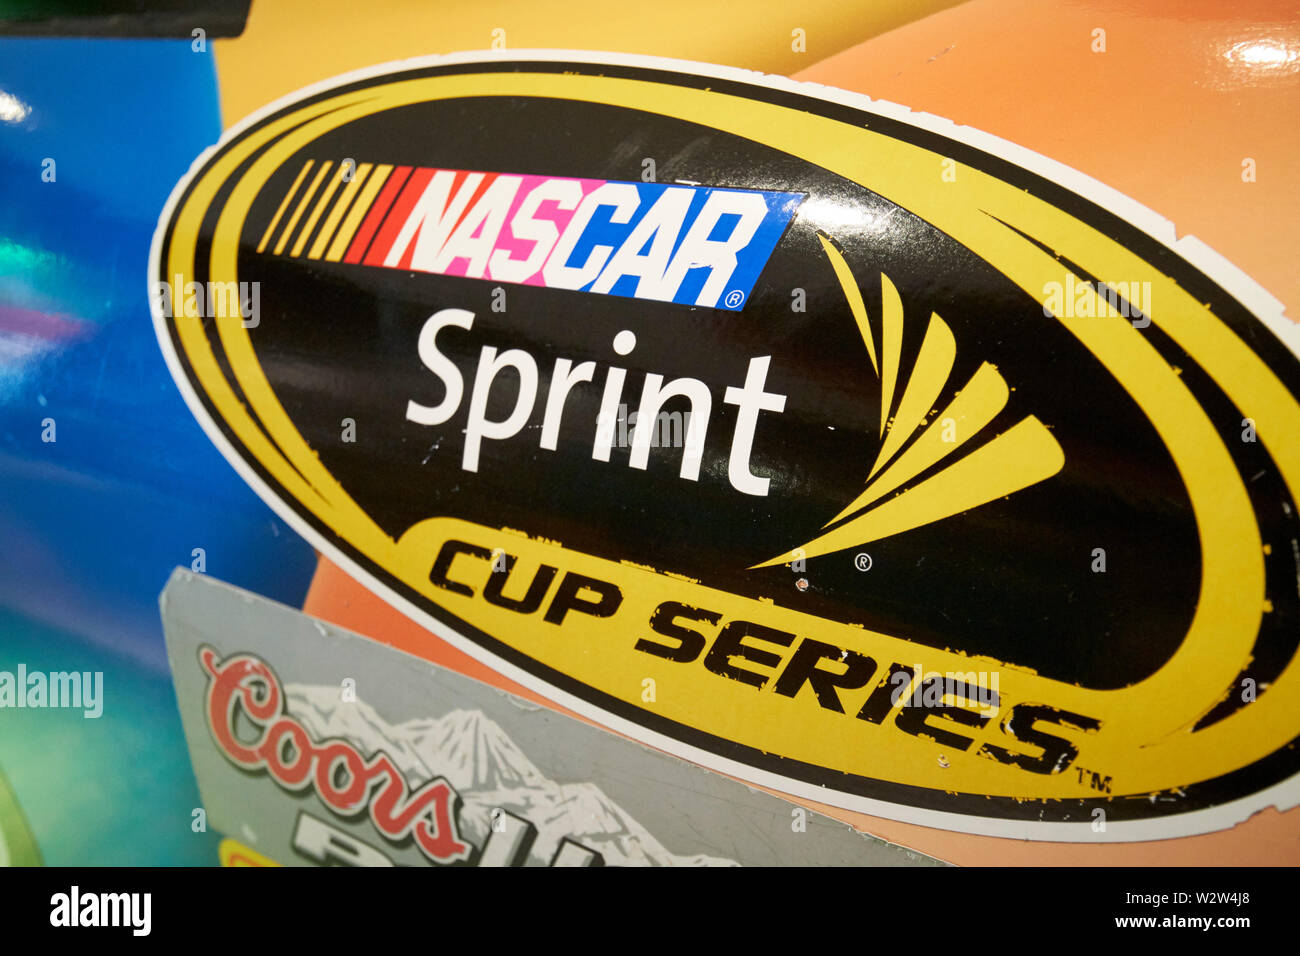 Nascar sprint Cup series autocollant sur le côté d'une voiture de course de NASCAR en Floride USA United States of America Banque D'Images